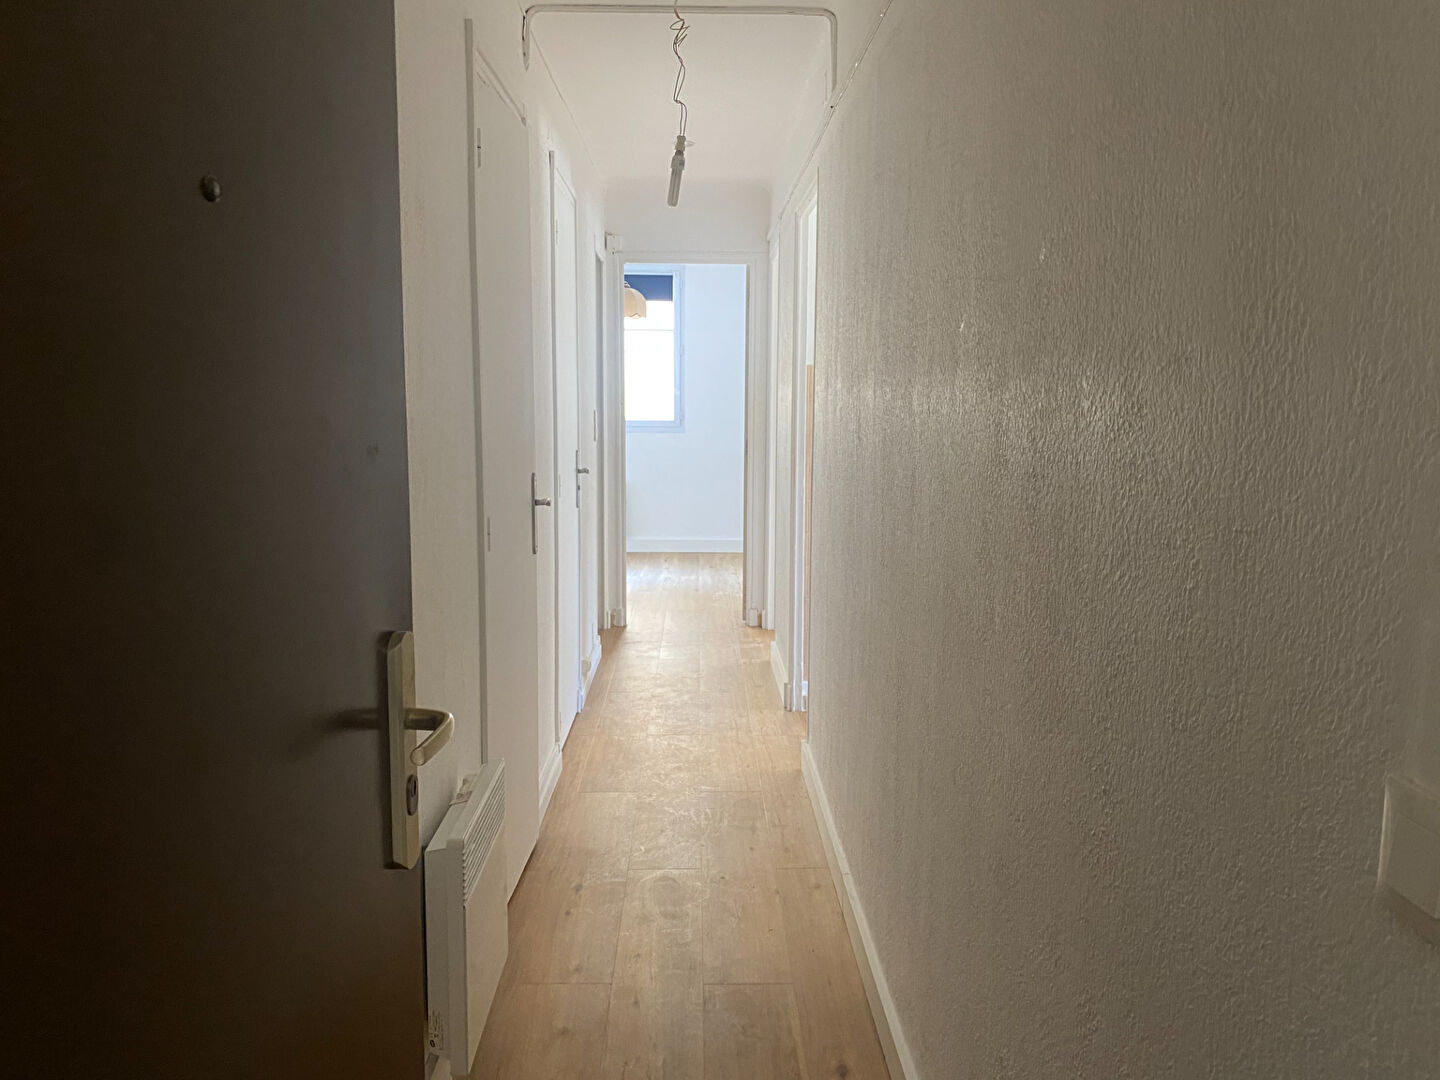 A LOUER – Appartement t2 38m² résidence fermée